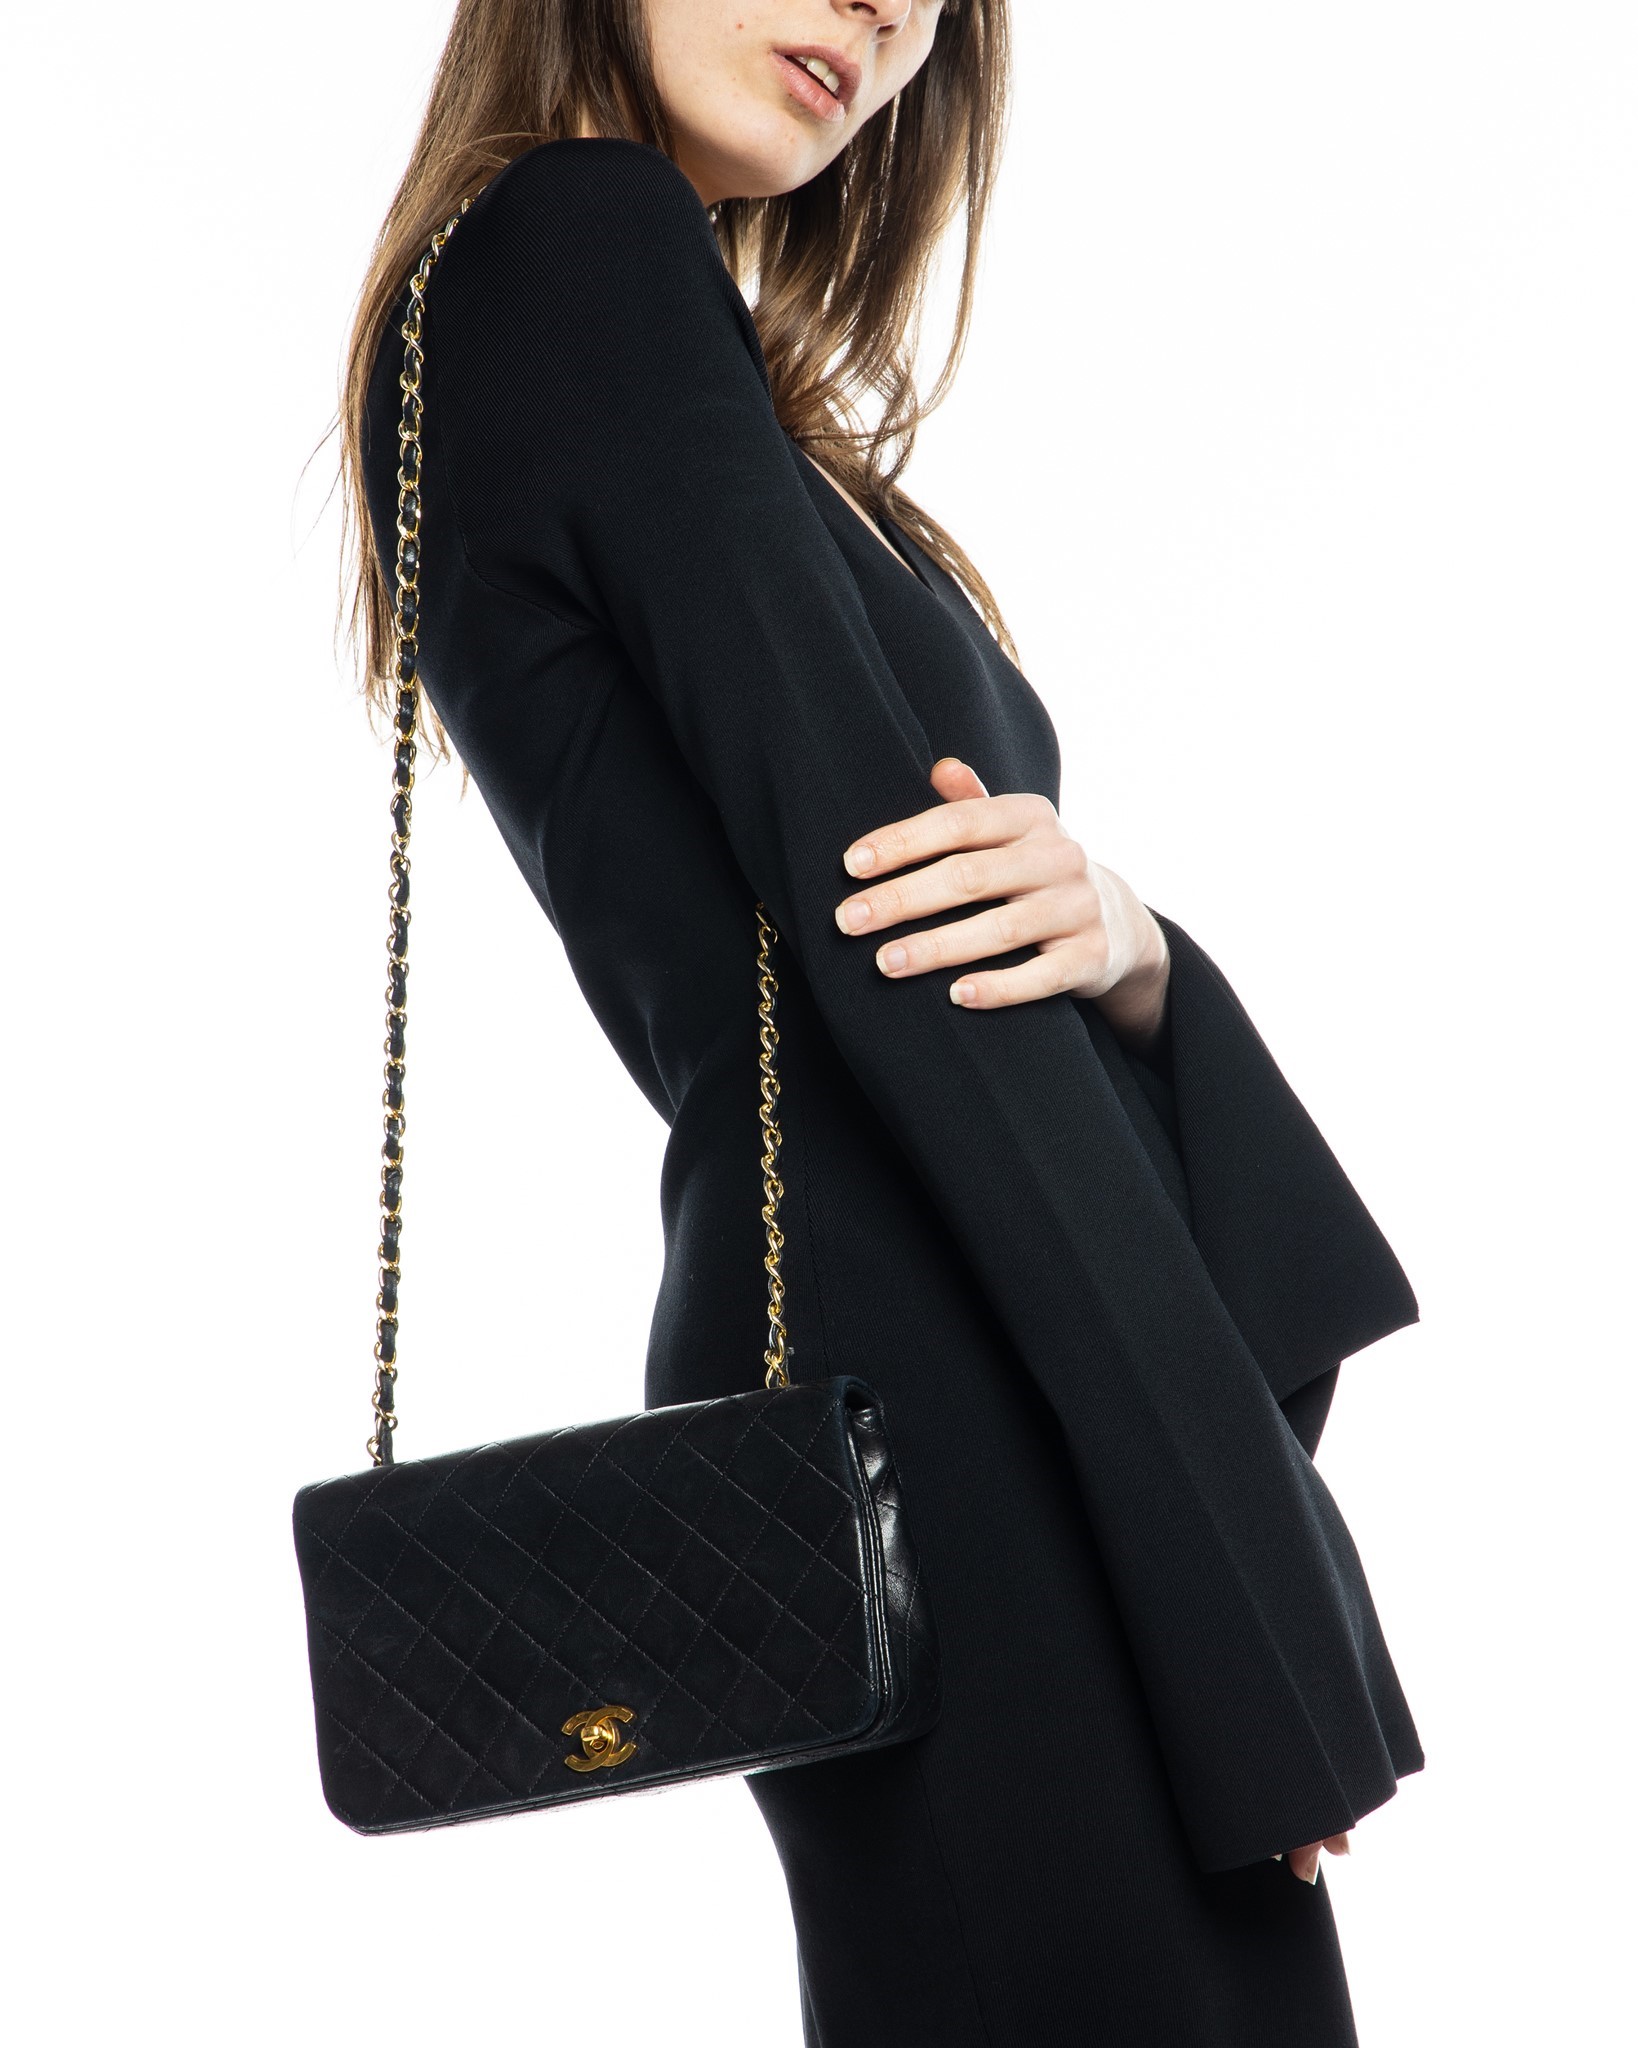 31 vintage leather handbag Chanel Black in Leather  25277087